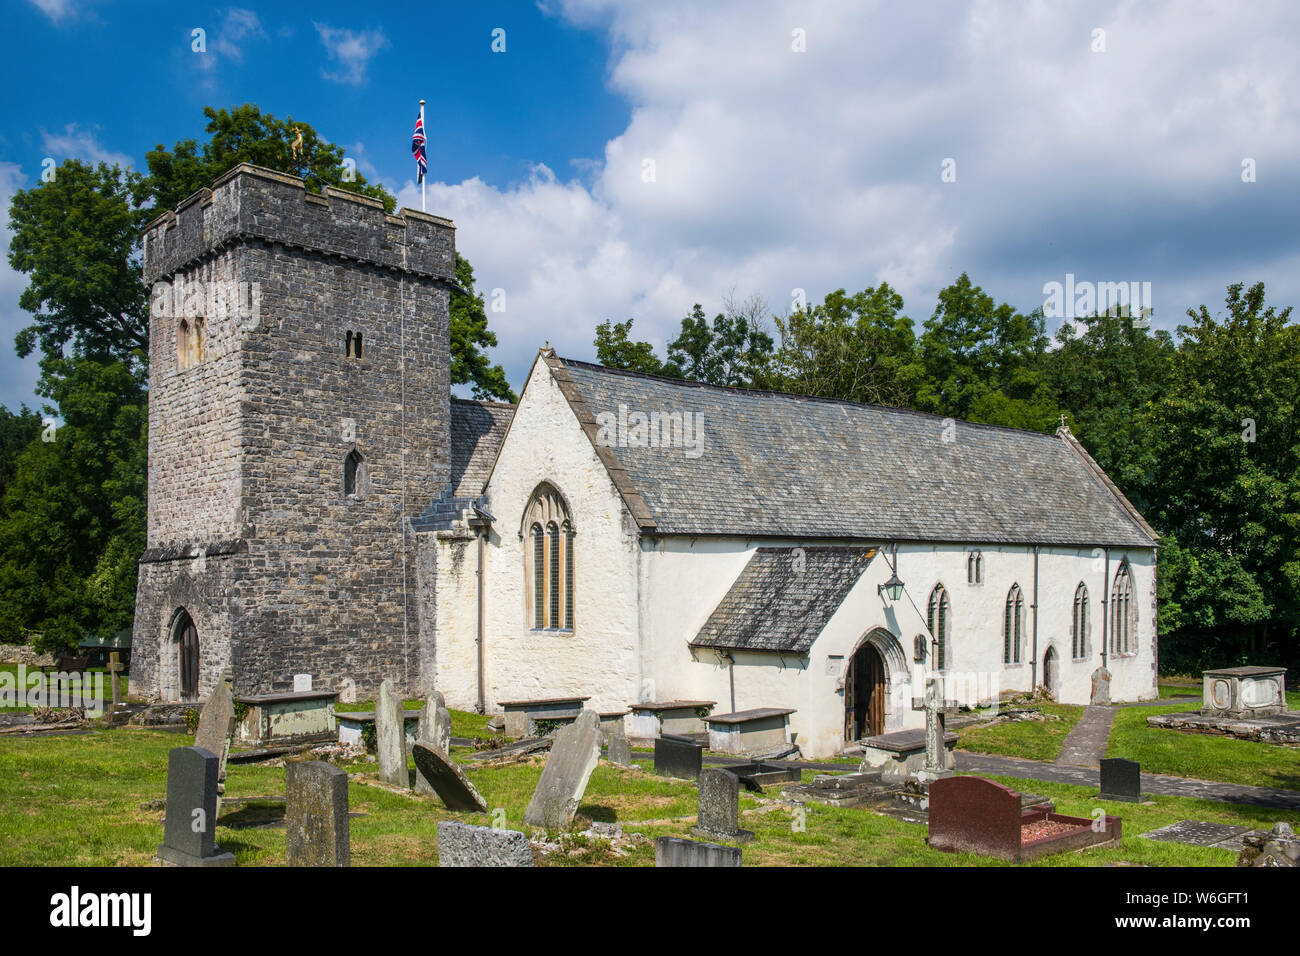 St cadoc's Kirche in das Tal von Glamorgan, South Wales an einem sonnigen Tag Stockfoto